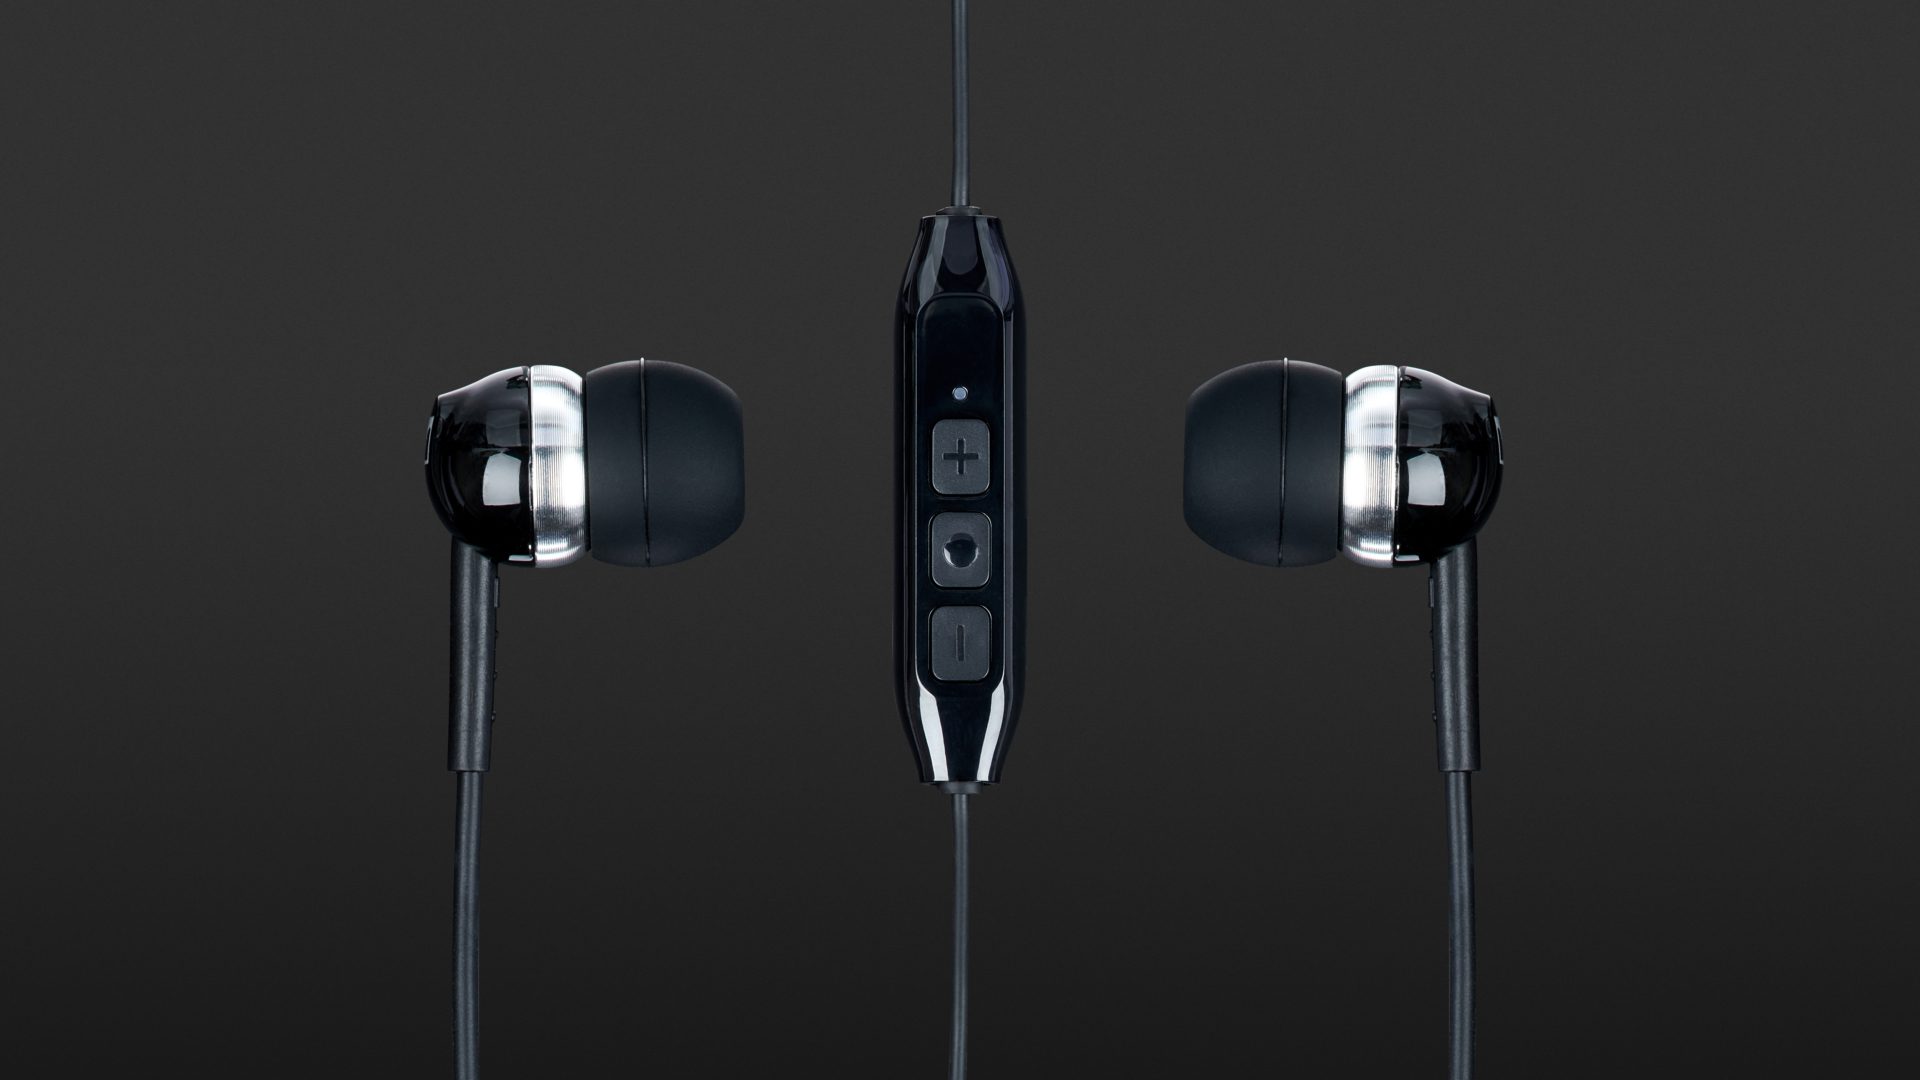 Audífonos Sennheiser Cx 150bt Bluetooth 5.0 Auriculares